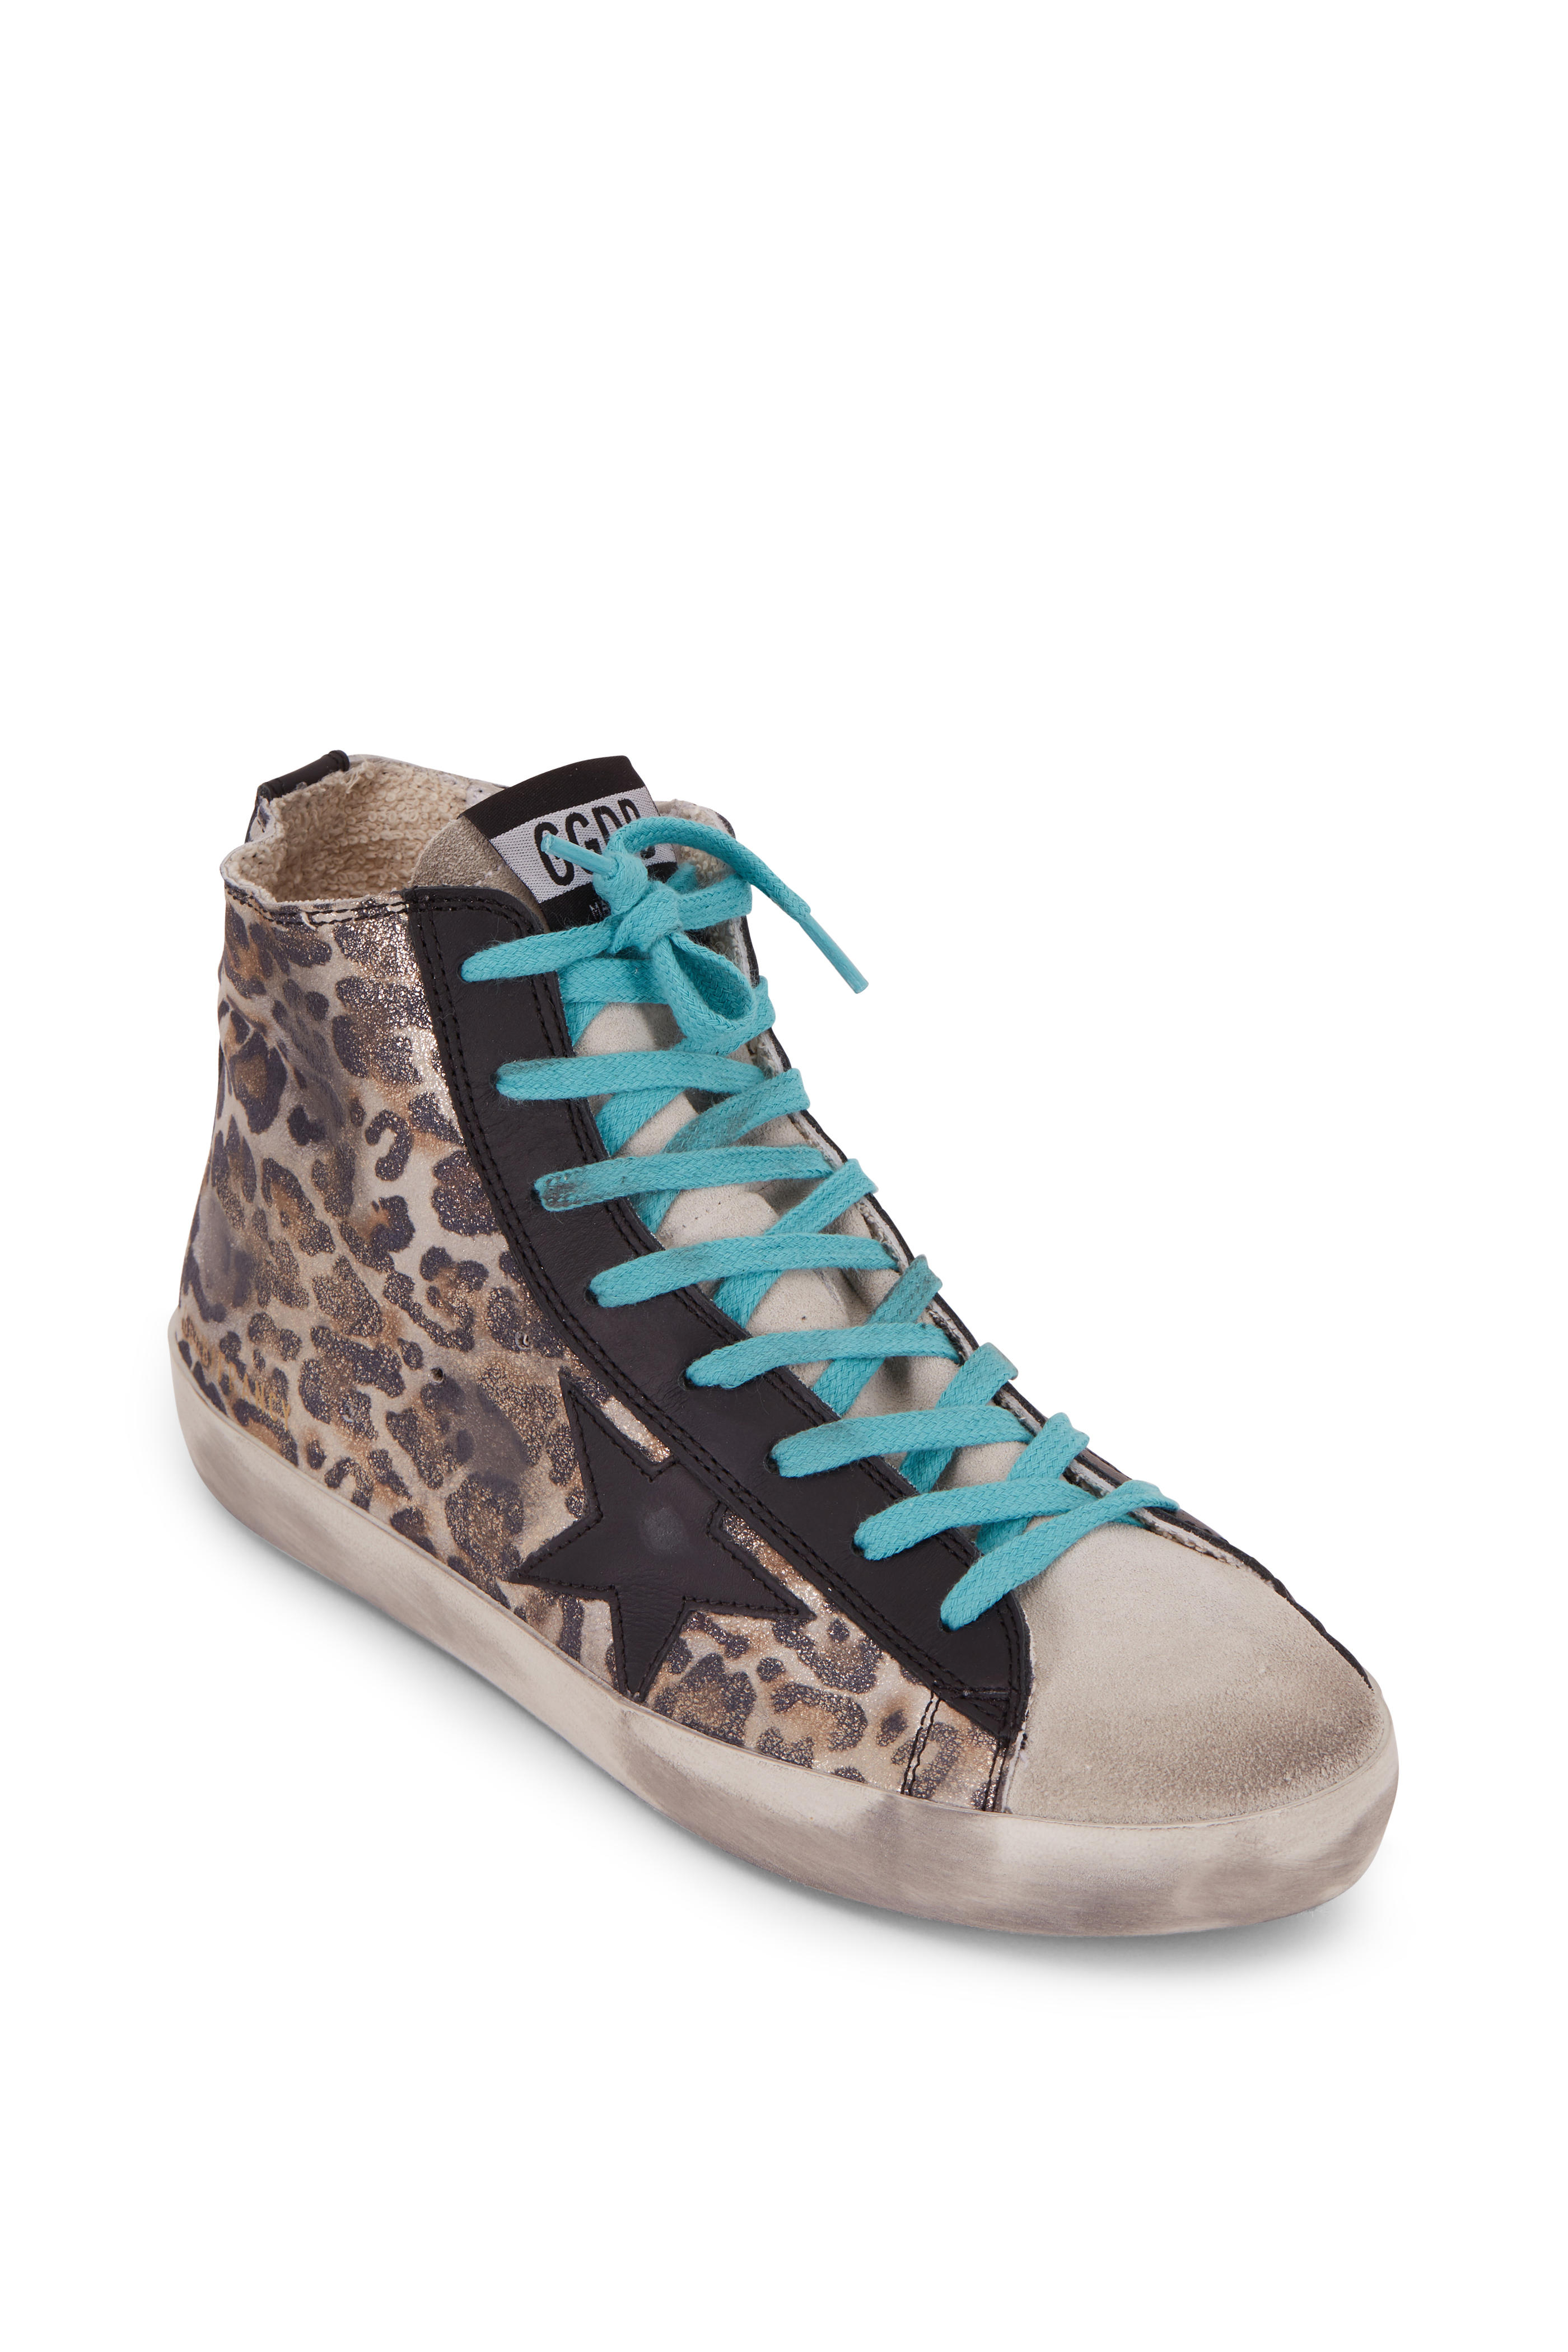 golden goose leopard high top sneakers